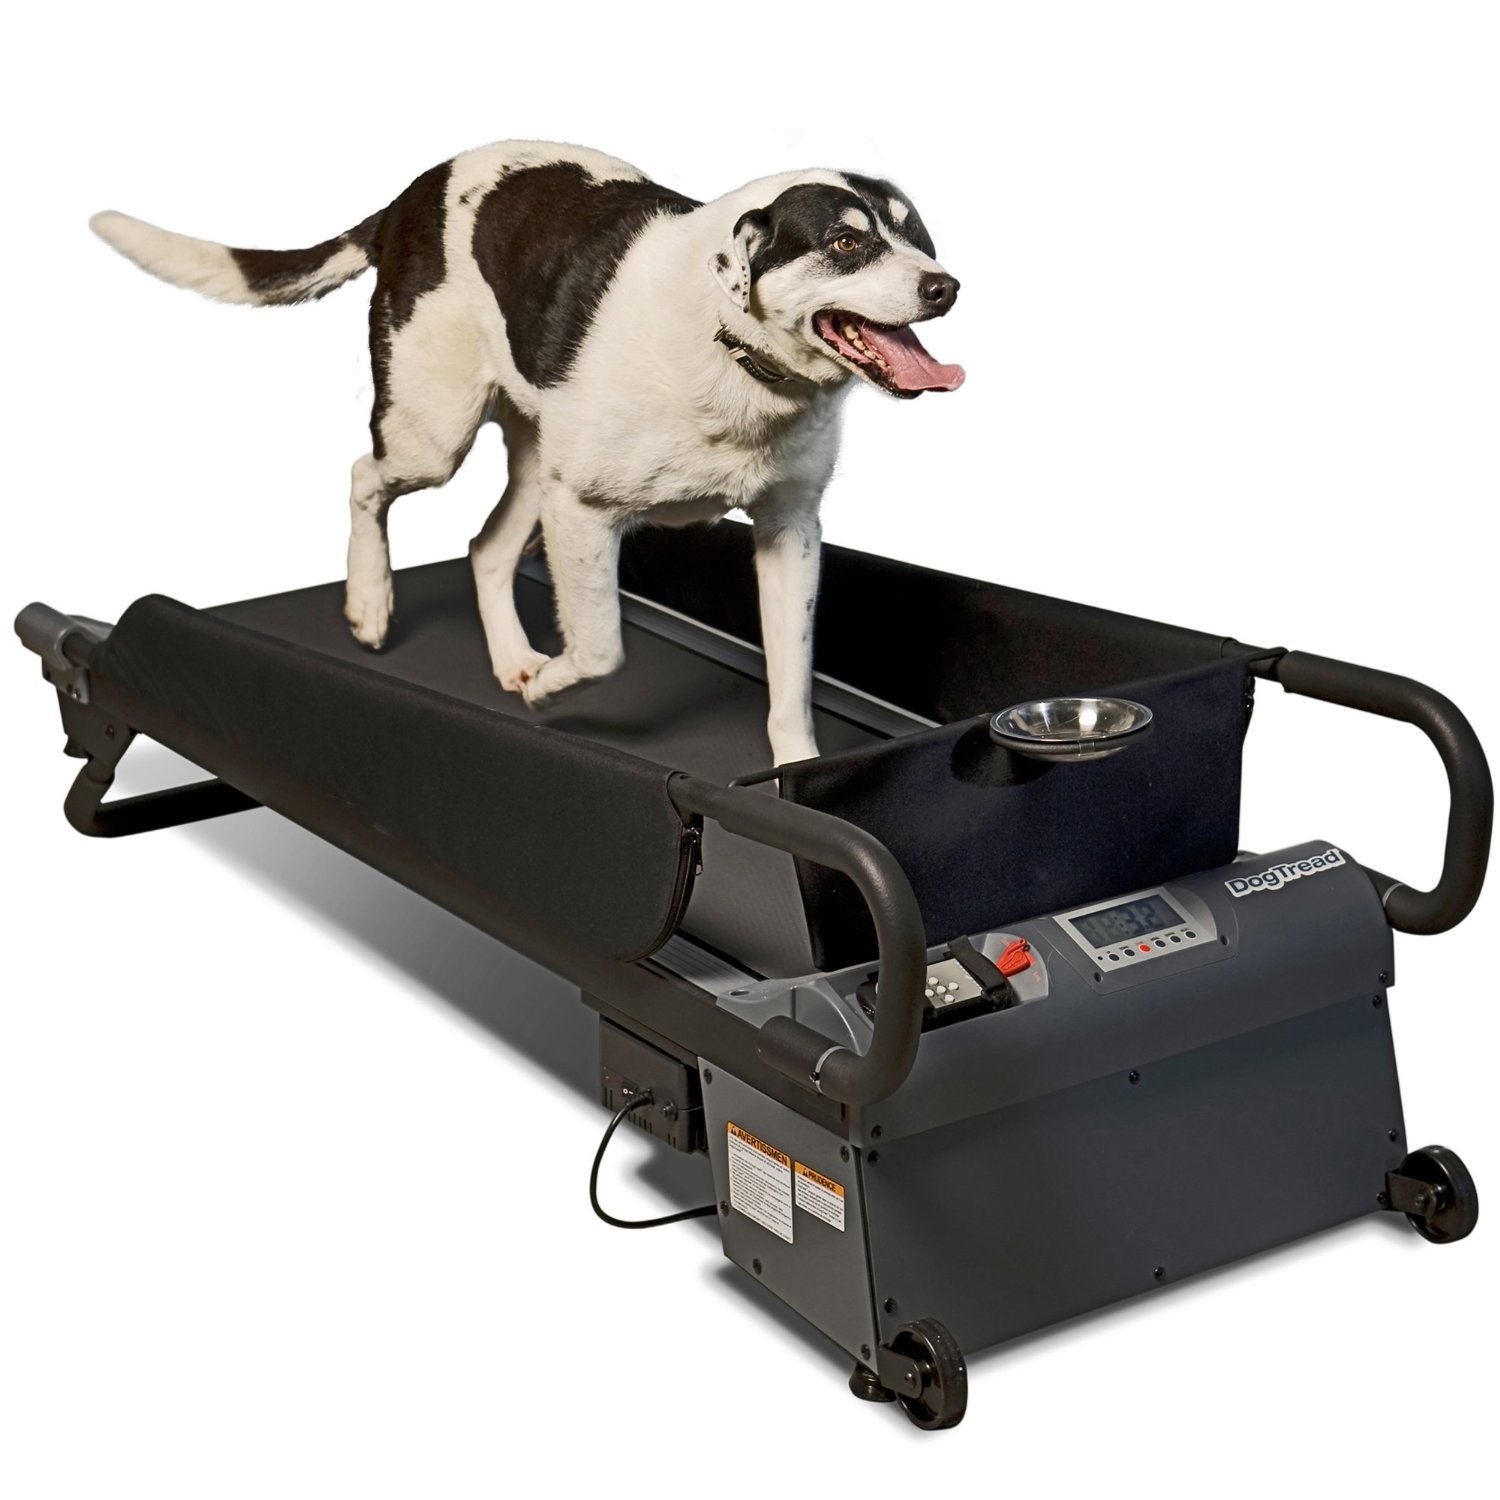 Sử dụng máy chạy bộ cho chó tập luyện